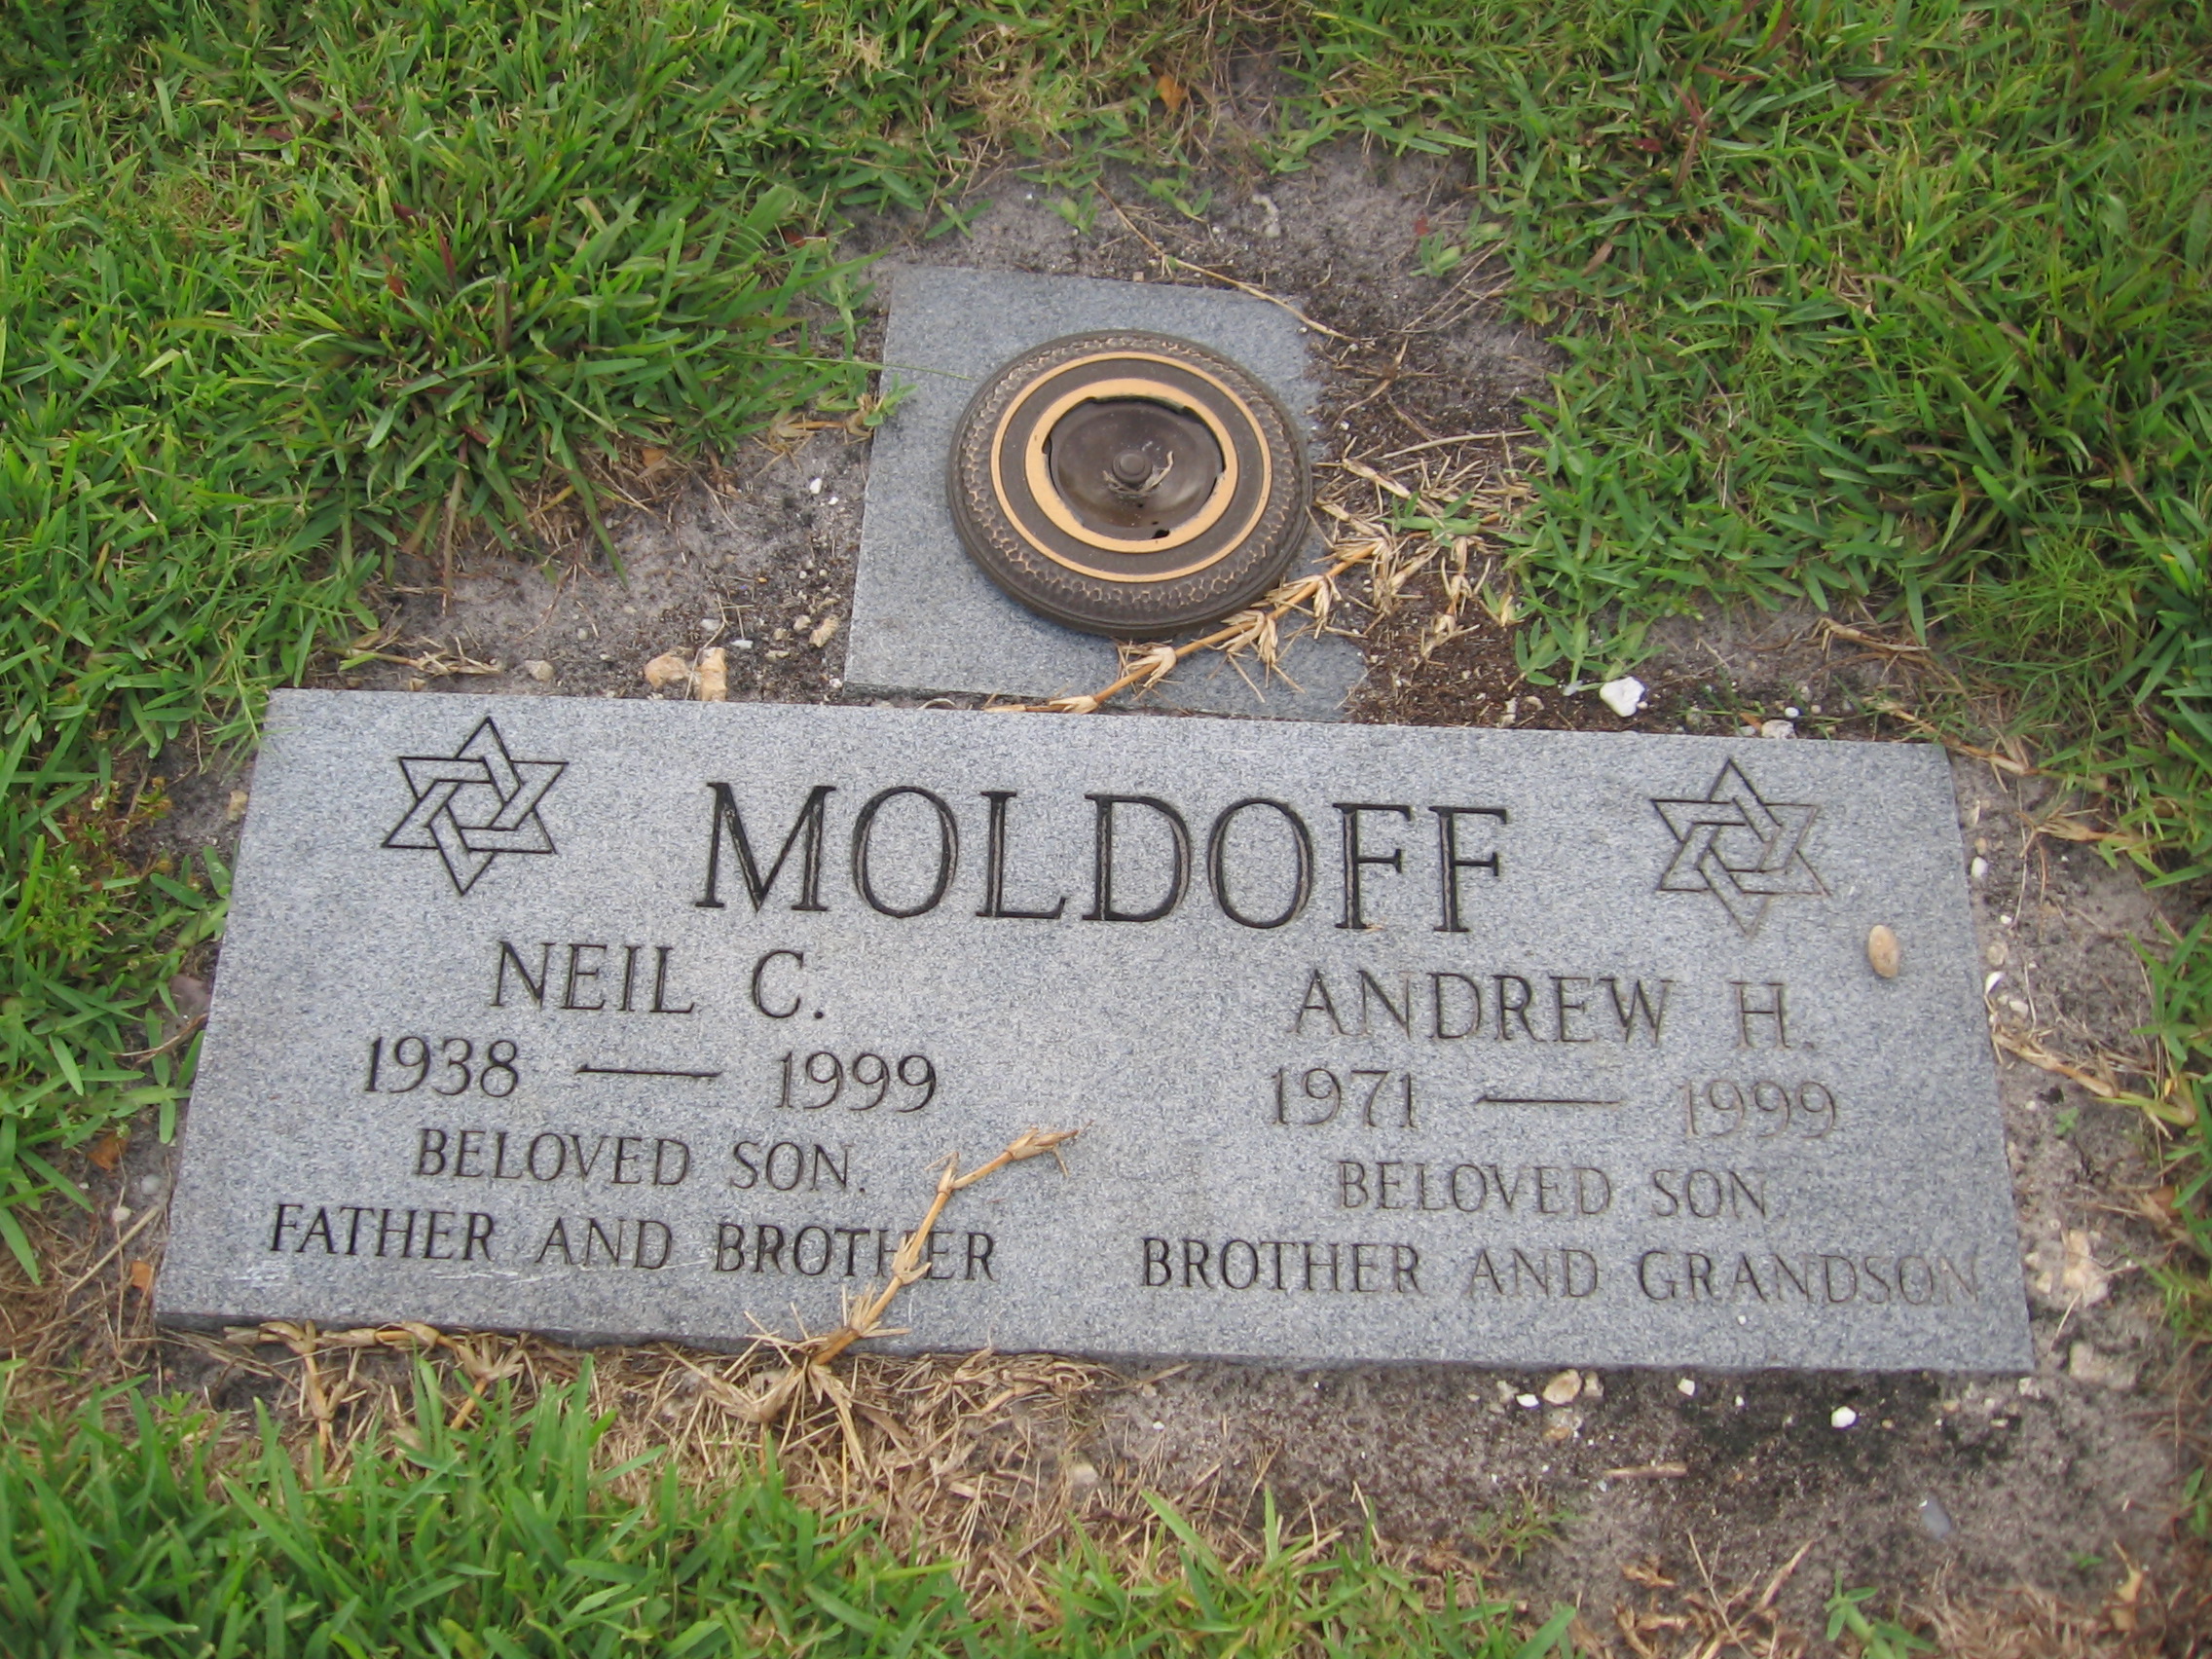 Andrew H Moldoff